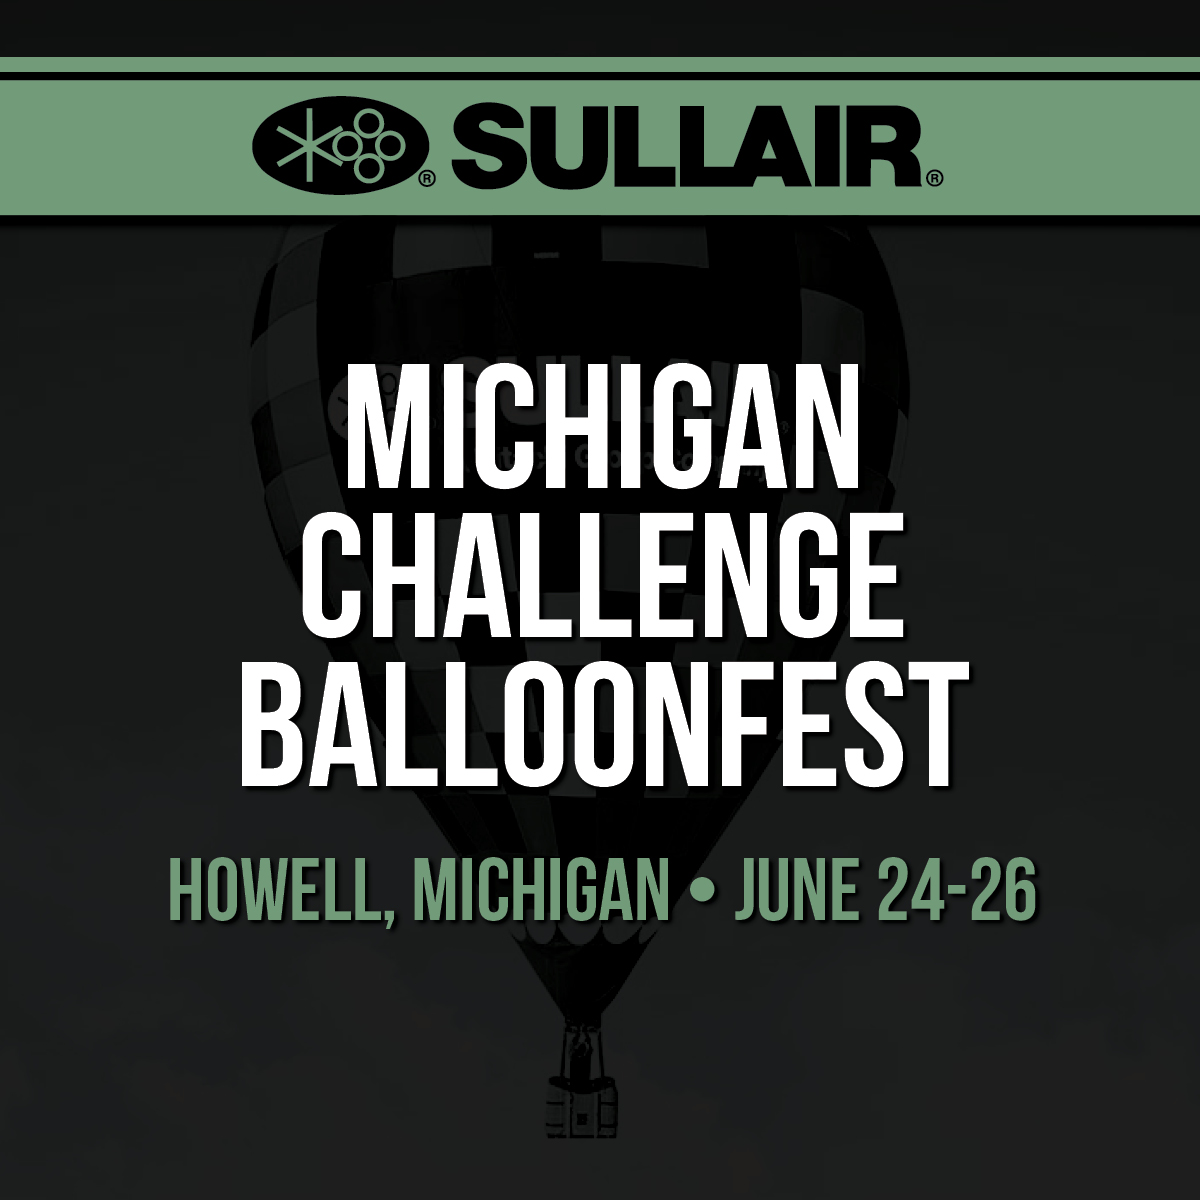 Michigan Challenge Balloonfest Sullair